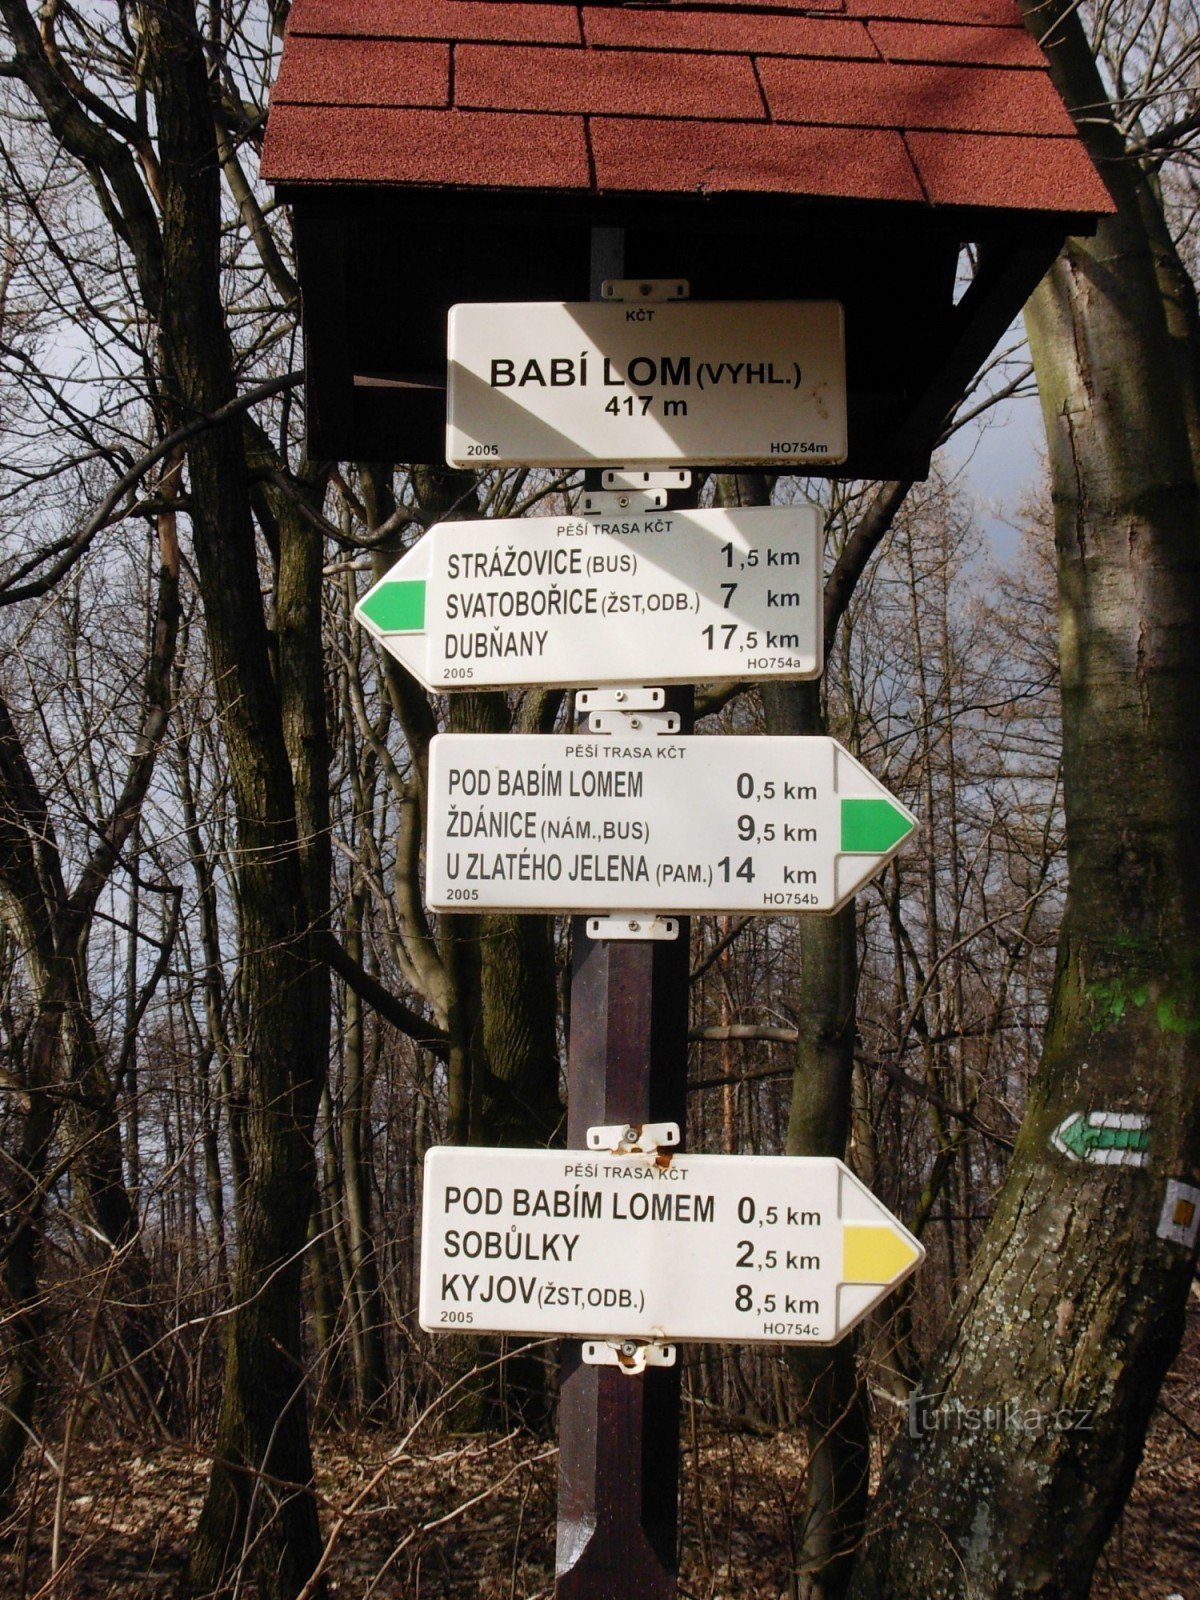 Direction sign on the Babí lom elevation